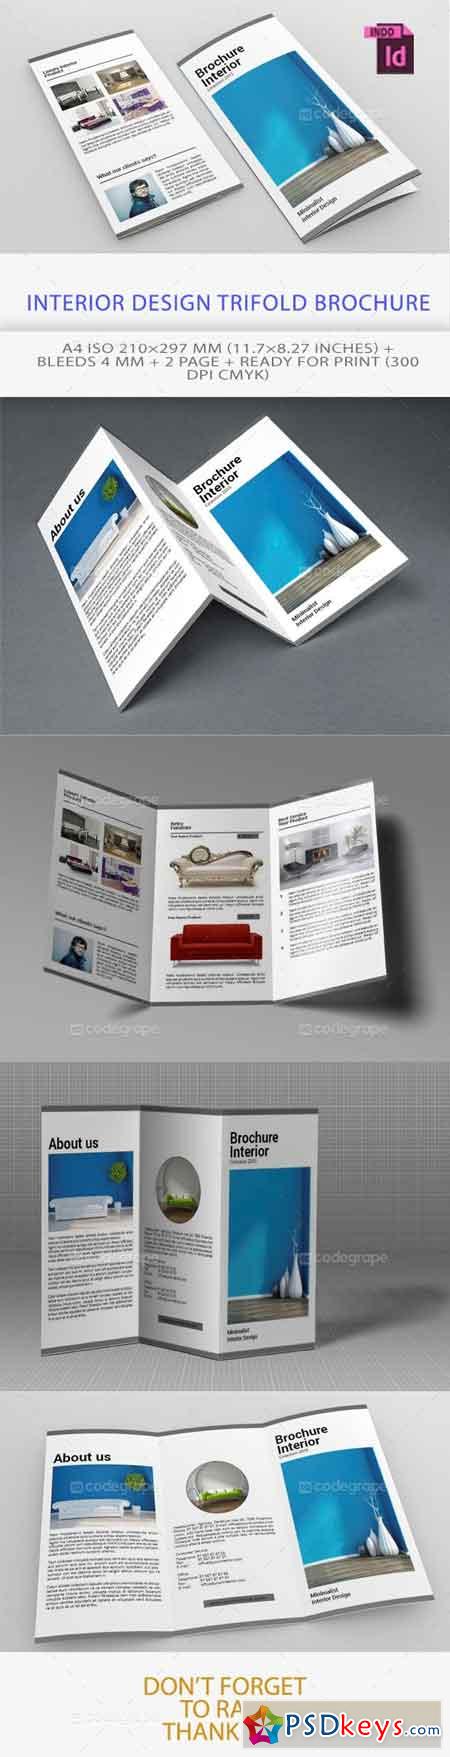 Interior Design Trifold Brochure 5499